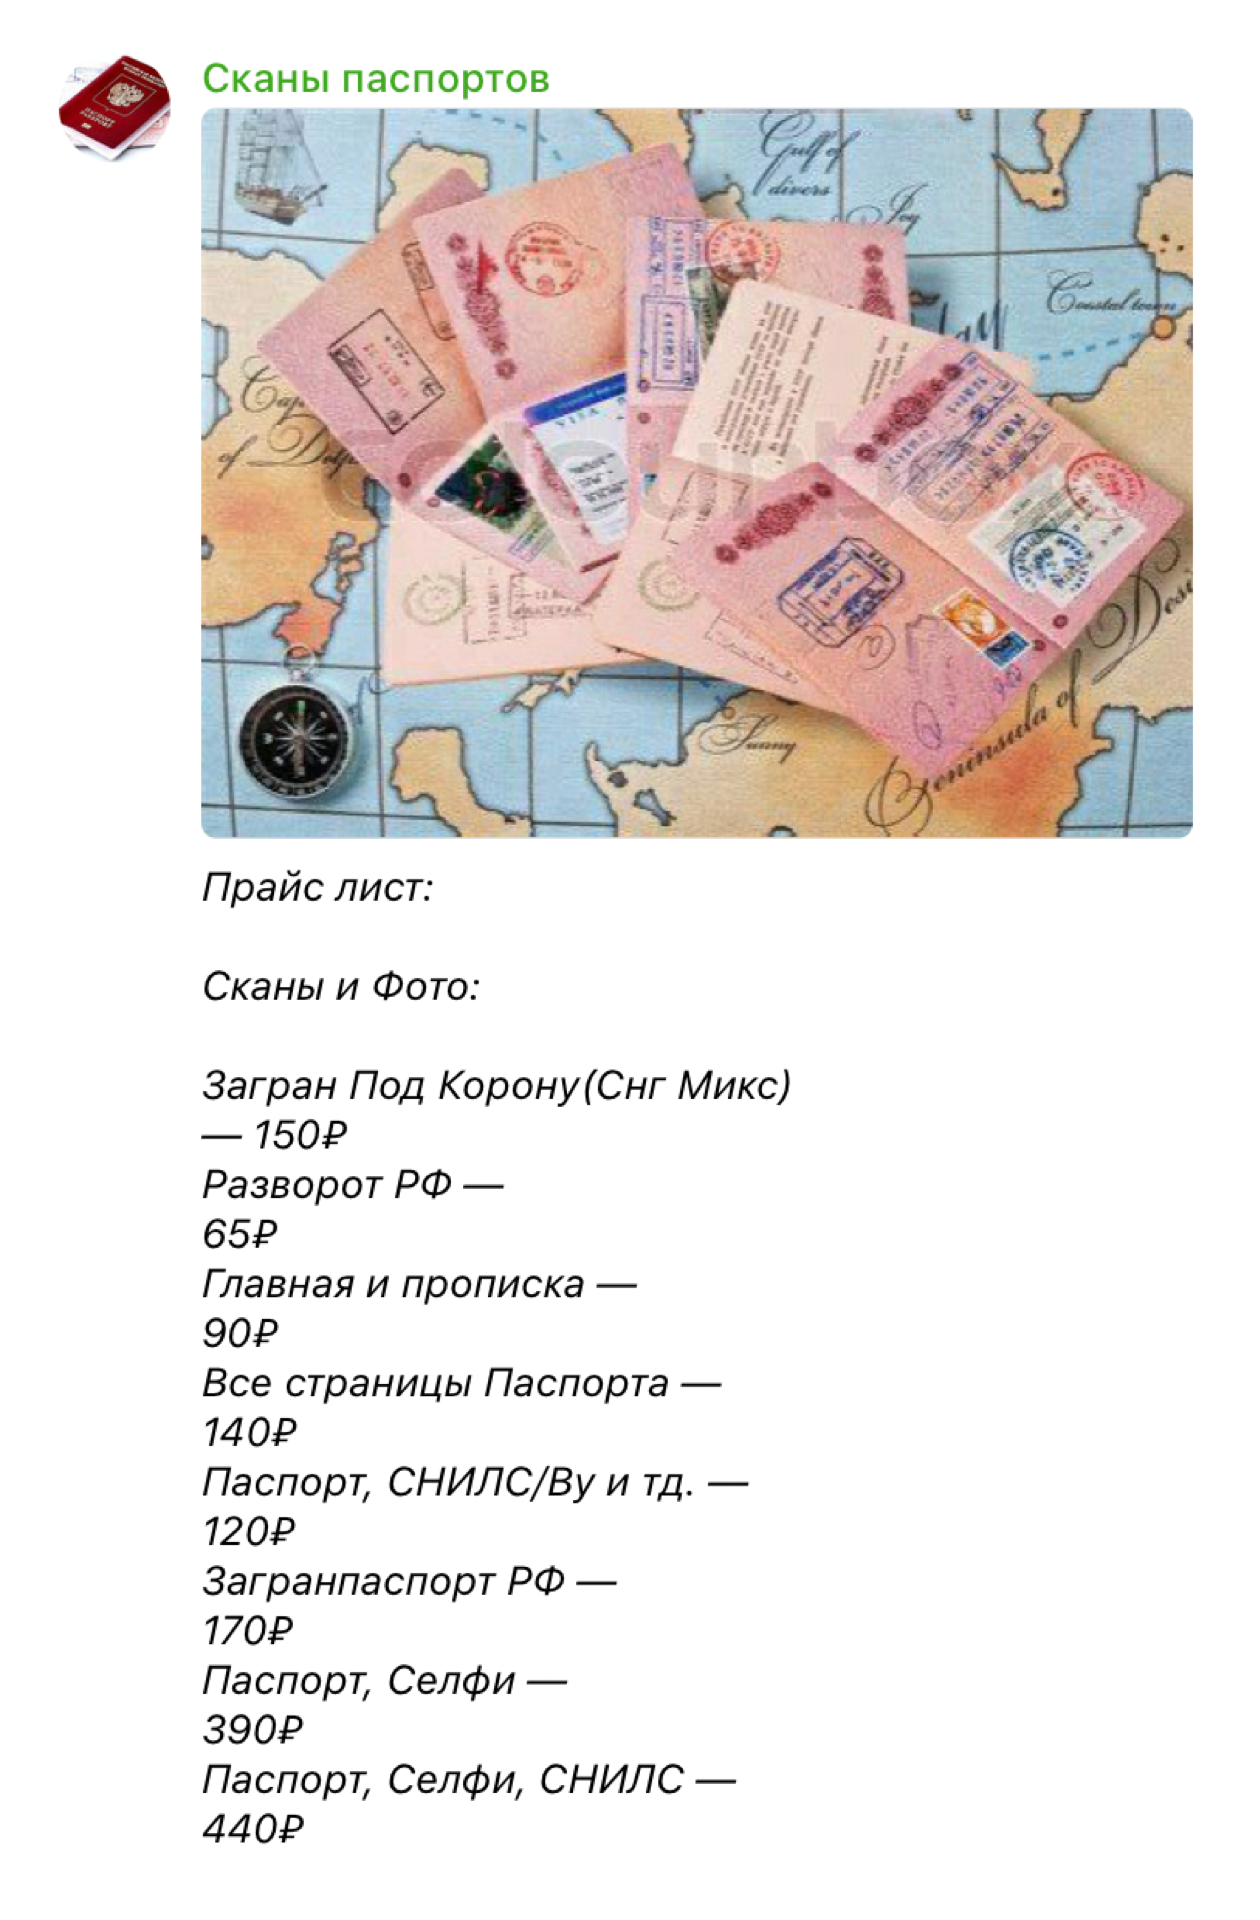 Так выглядит телеграм-канал, где продают сканы паспортов. Большинство копий мошенникам предоставили обычные люди добровольно, не зная, как их будут использовать